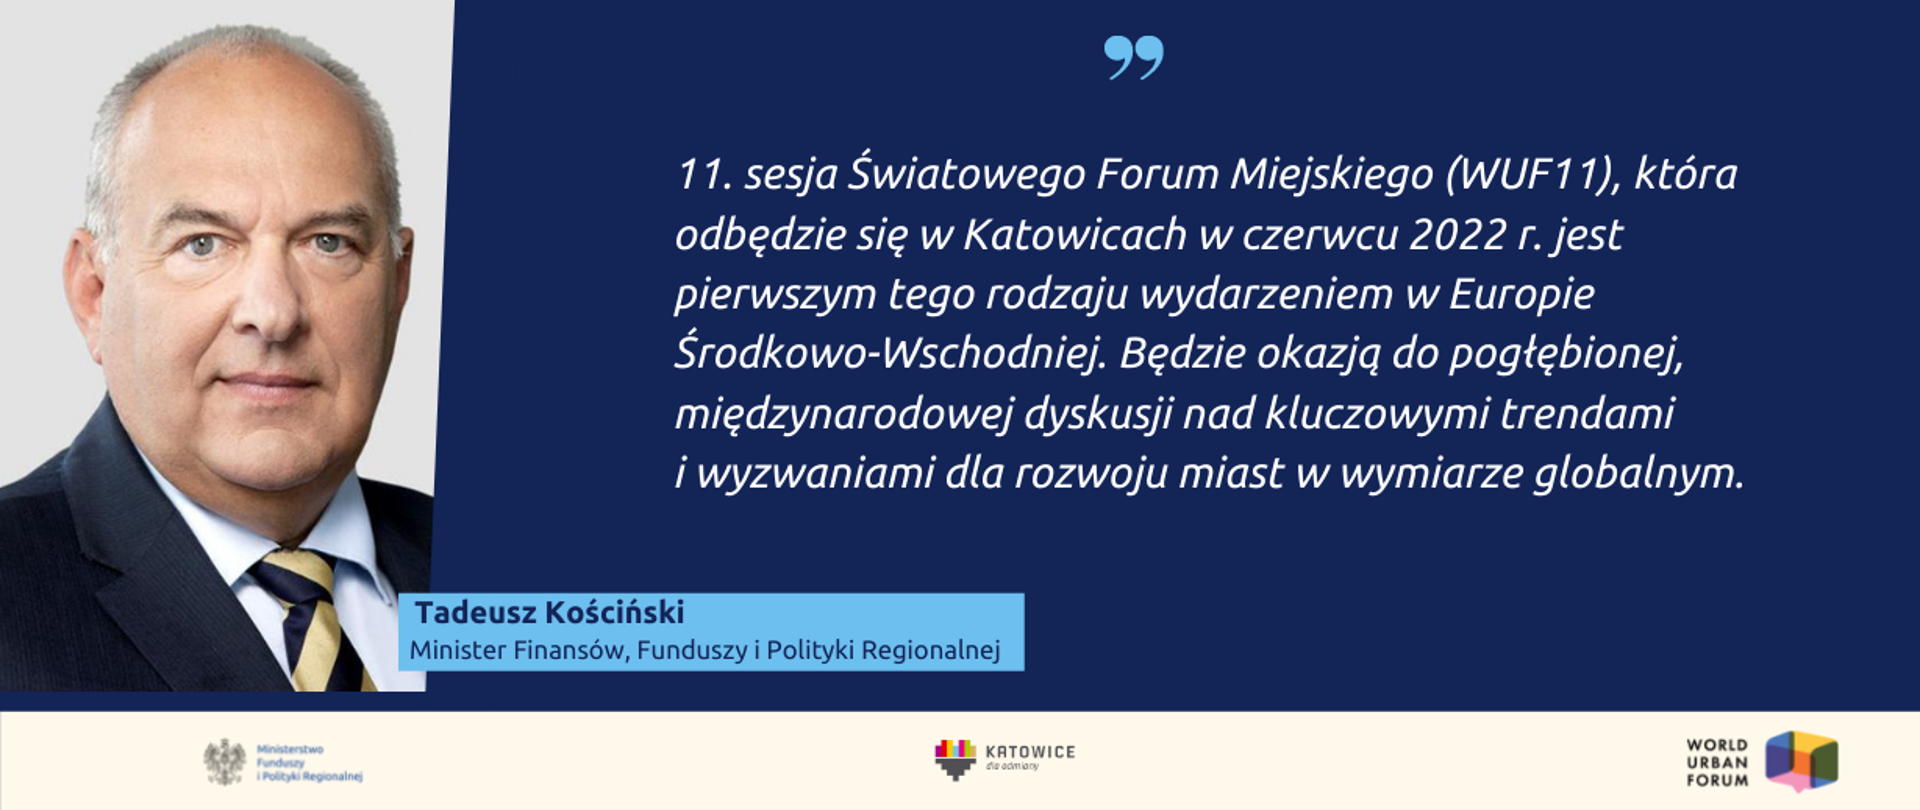 Zdjęcie ministra Tadeusza Kościńskiego i cytat: 11. sesja Światowego Forum Miejskiego (WUF11), która odbędzie się w Katowicach w czerwcu 2022 r. jest pierwszym tego rodzaju wydarzeniem w Europie Środkowo-Wschodniej. Będzie okazją do pogłębionej, międzynarodowej dyskusji nad kluczowymi trendami i wyzwaniami dla rozwoju miast w wymiarze globalnym